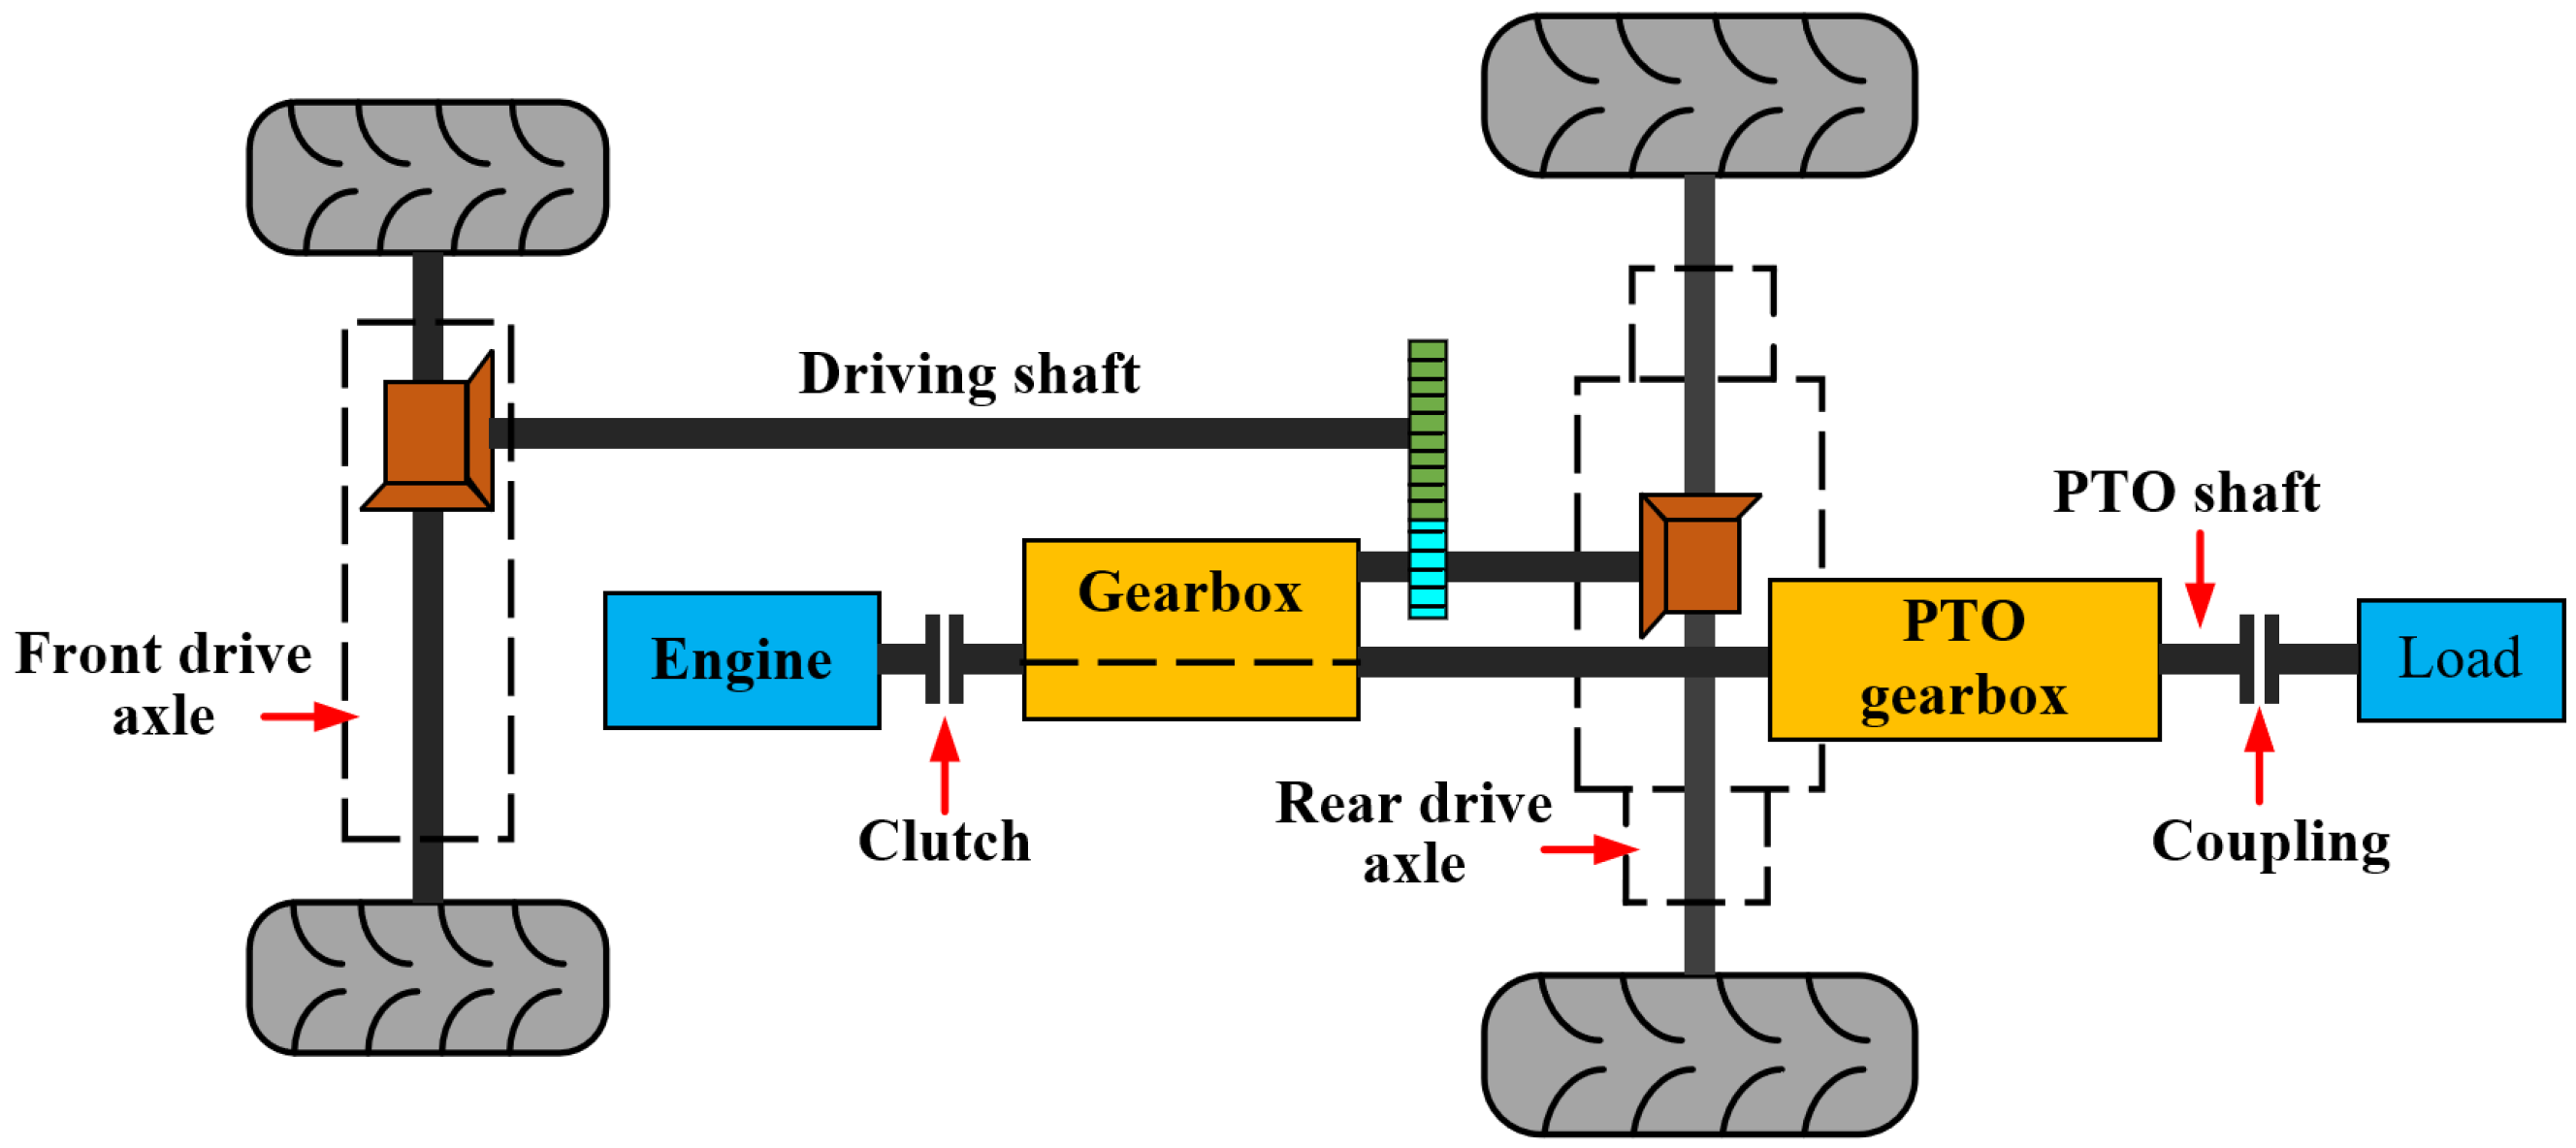 اجزای انتقال قدرت موتور در یک تراکتور باری